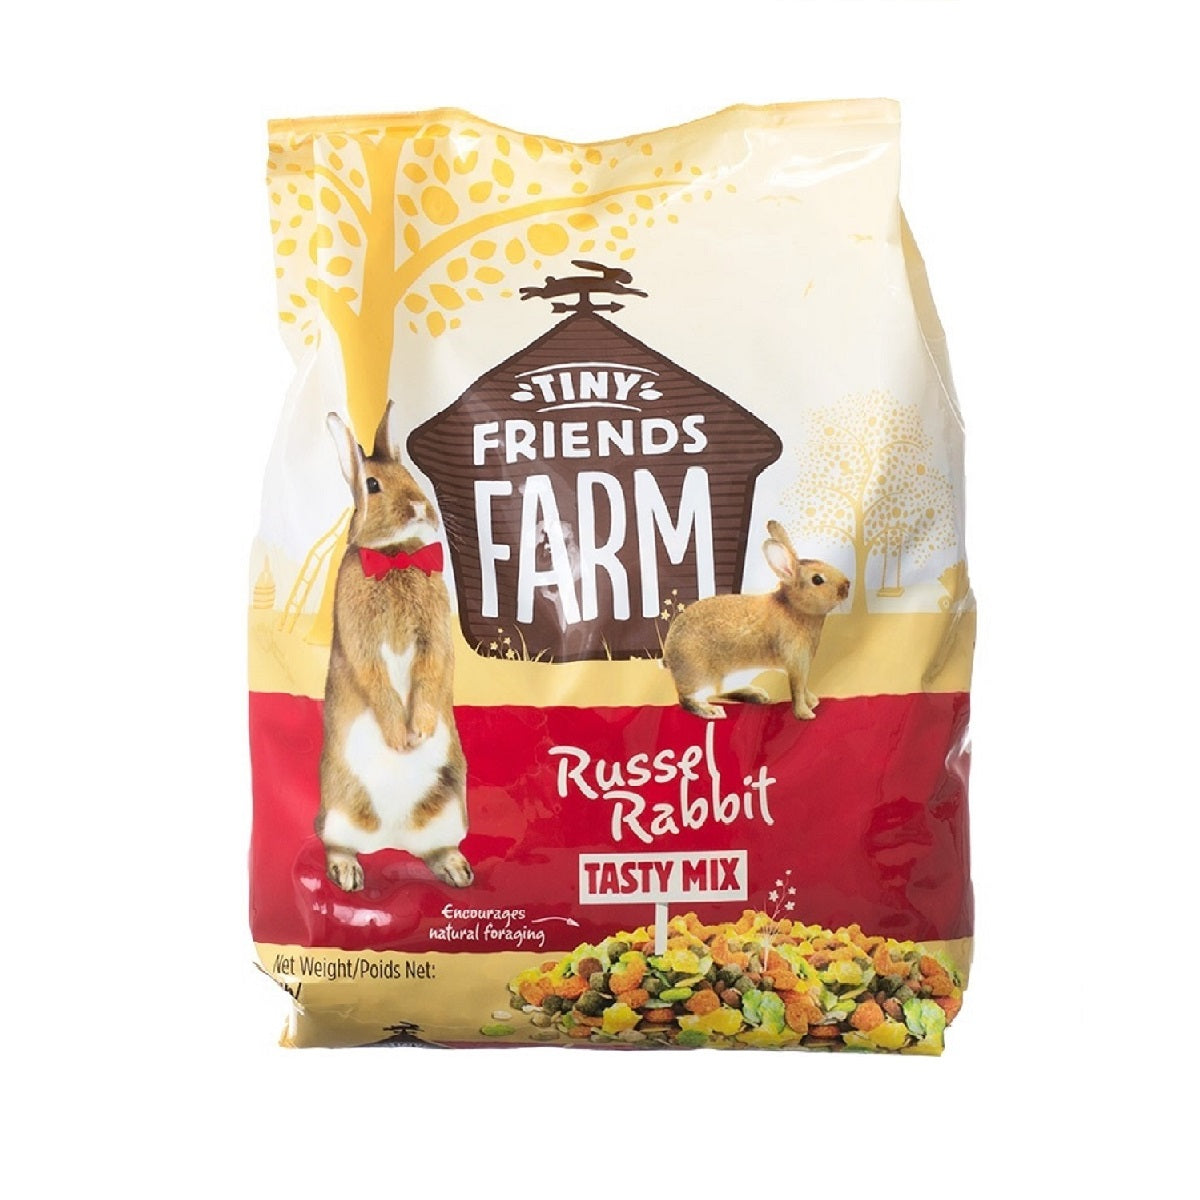 Tiny Friends Farm - Russel Rabbit Tasty Mix